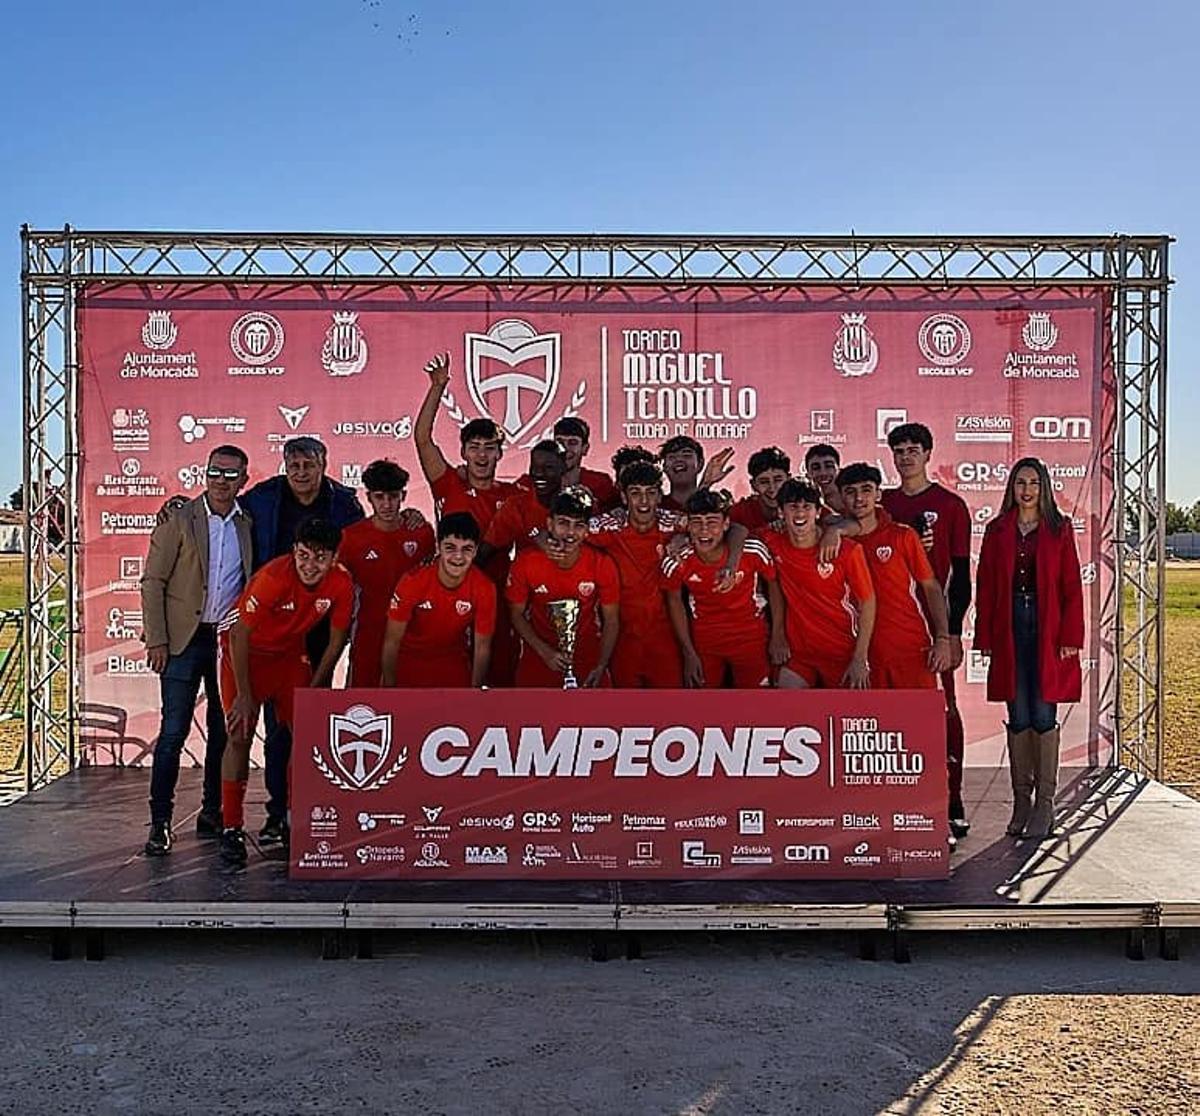 El equipo Juvenil del Torre Levante fue segundo en el Torneo Miguel Tendillo.